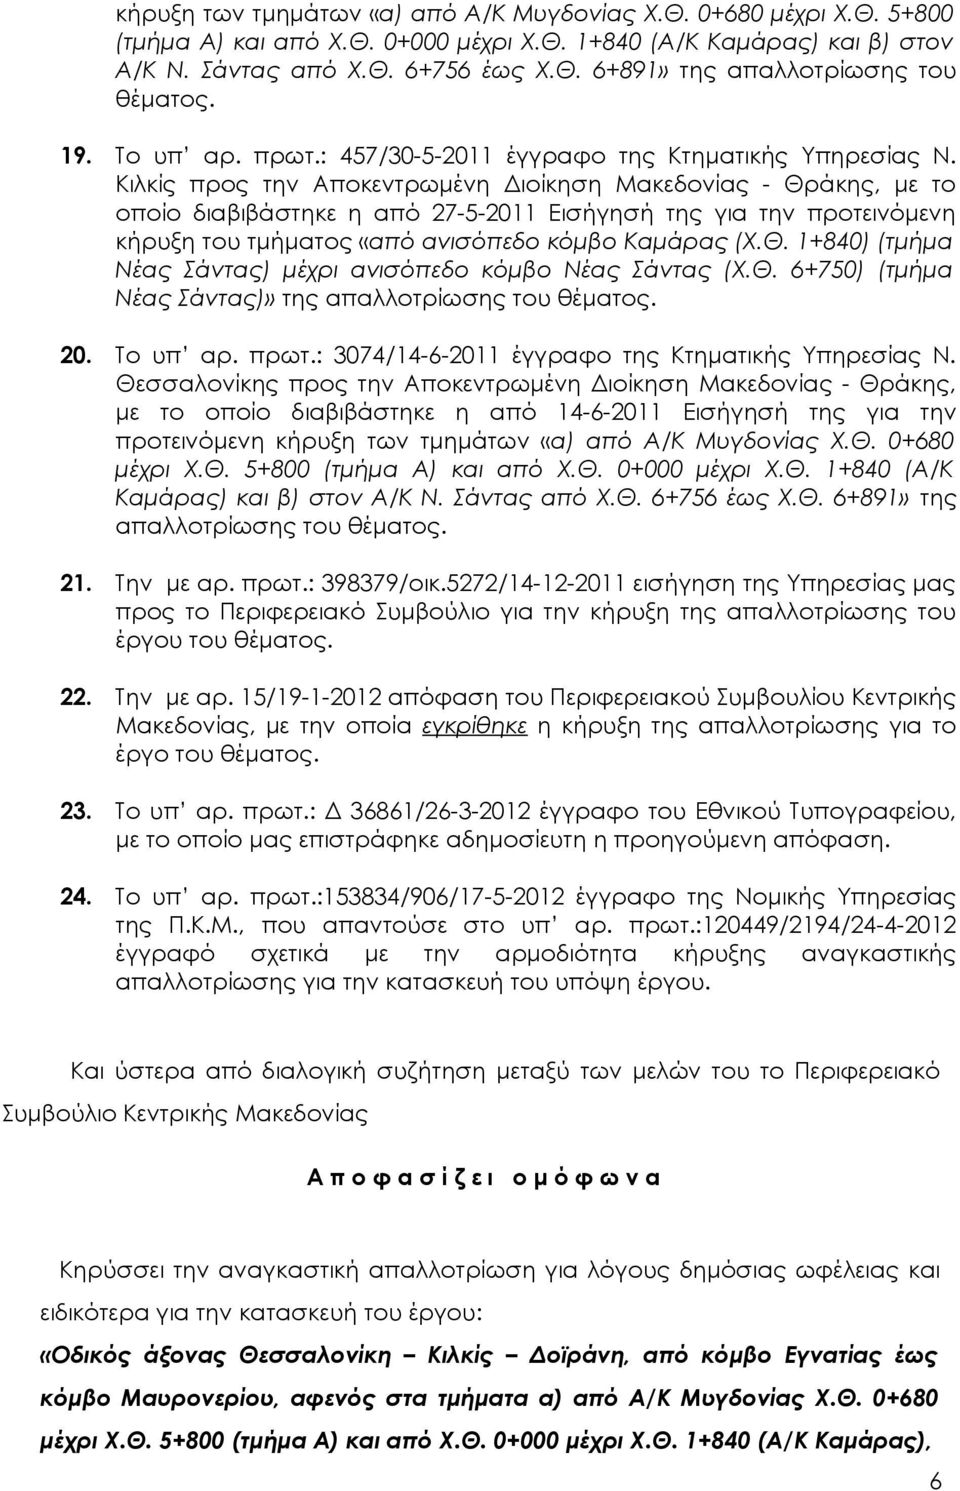 Κιλκίς προς την Αποκεντρωμένη Διοίκηση Μακεδονίας - Θράκης, με το οποίο διαβιβάστηκε η από 27-5-2011 Εισήγησή της για την προτεινόμενη κήρυξη του τμήματος «από ανισόπεδο κόμβο Καμάρας (Χ.Θ. 1+840) (τμήμα Νέας Σάντας) μέχρι ανισόπεδο κόμβο Νέας Σάντας (Χ.